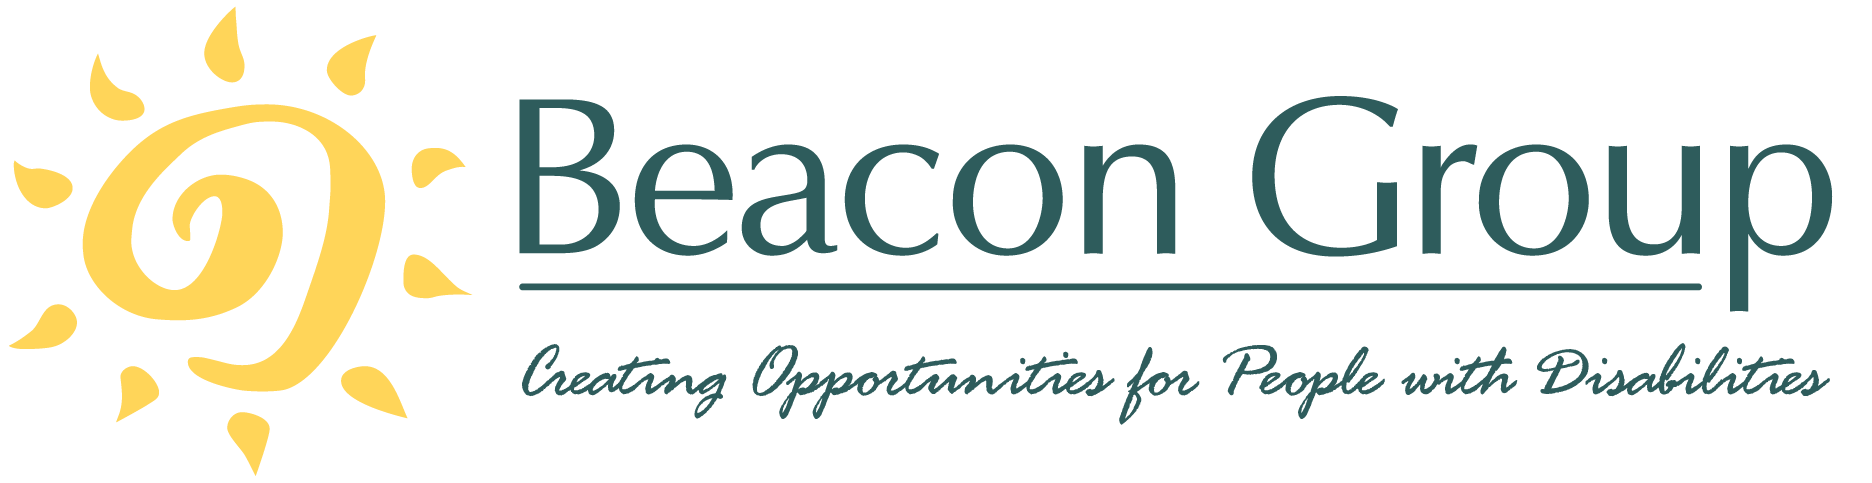 Beacon Group